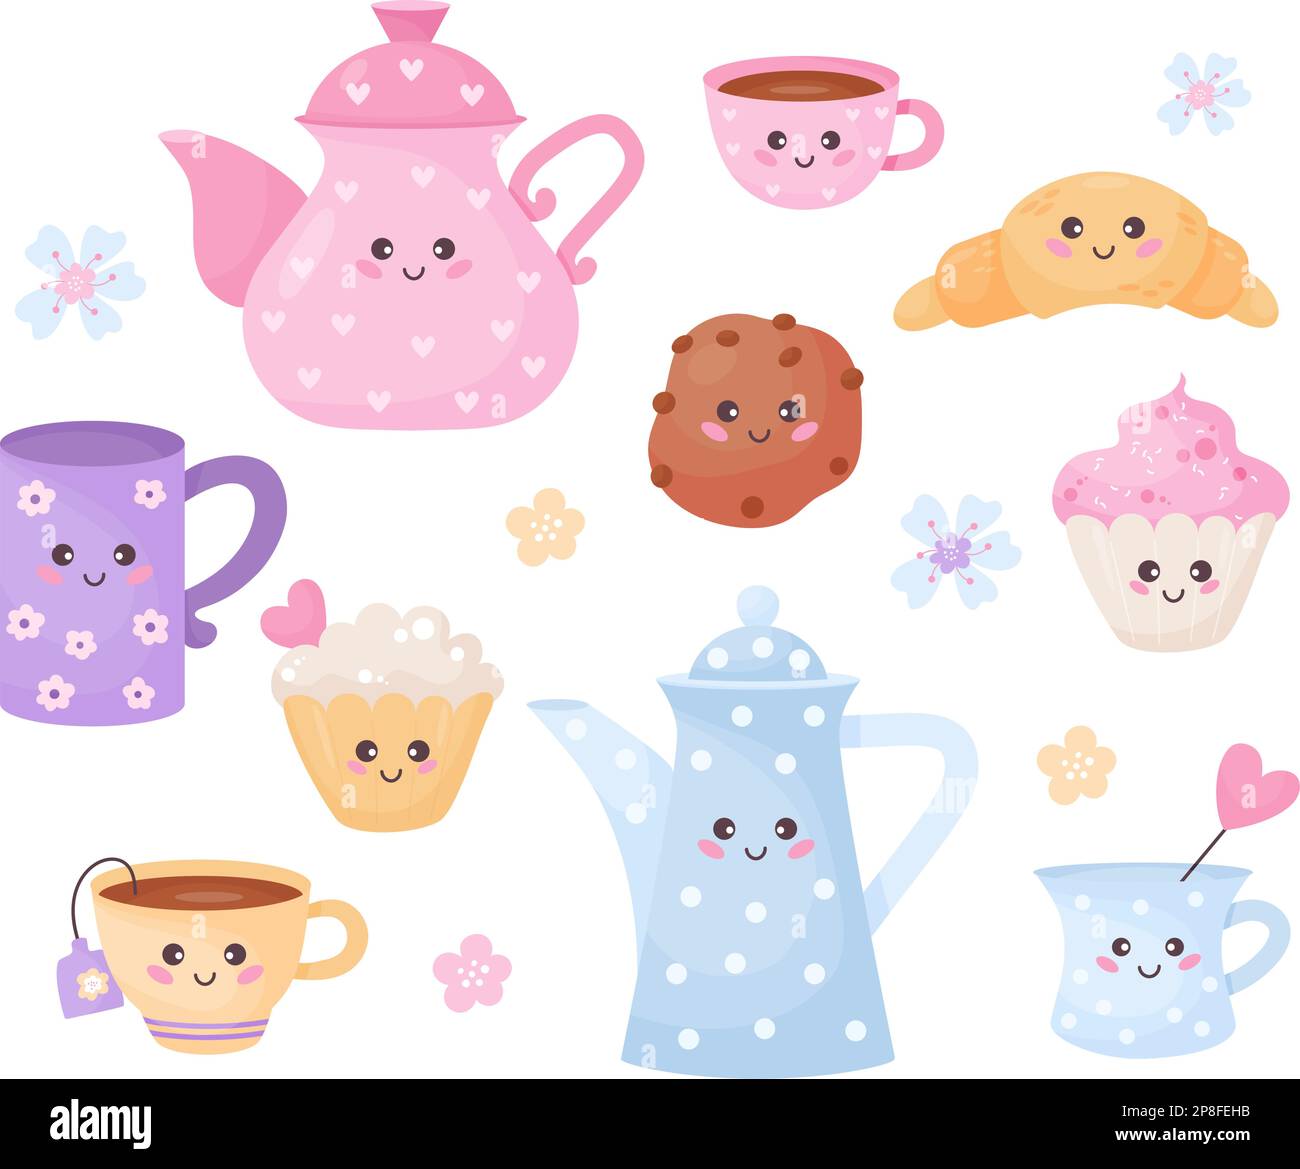 Tasse mit niedlichen Figuren, Teekannen, Croissants, Muffins und Kekse.  Vektordarstellung. Isoliertes, lustiges Cartoon-Essen und Geschirr für die  Kindersammlung, Design Stock-Vektorgrafik - Alamy